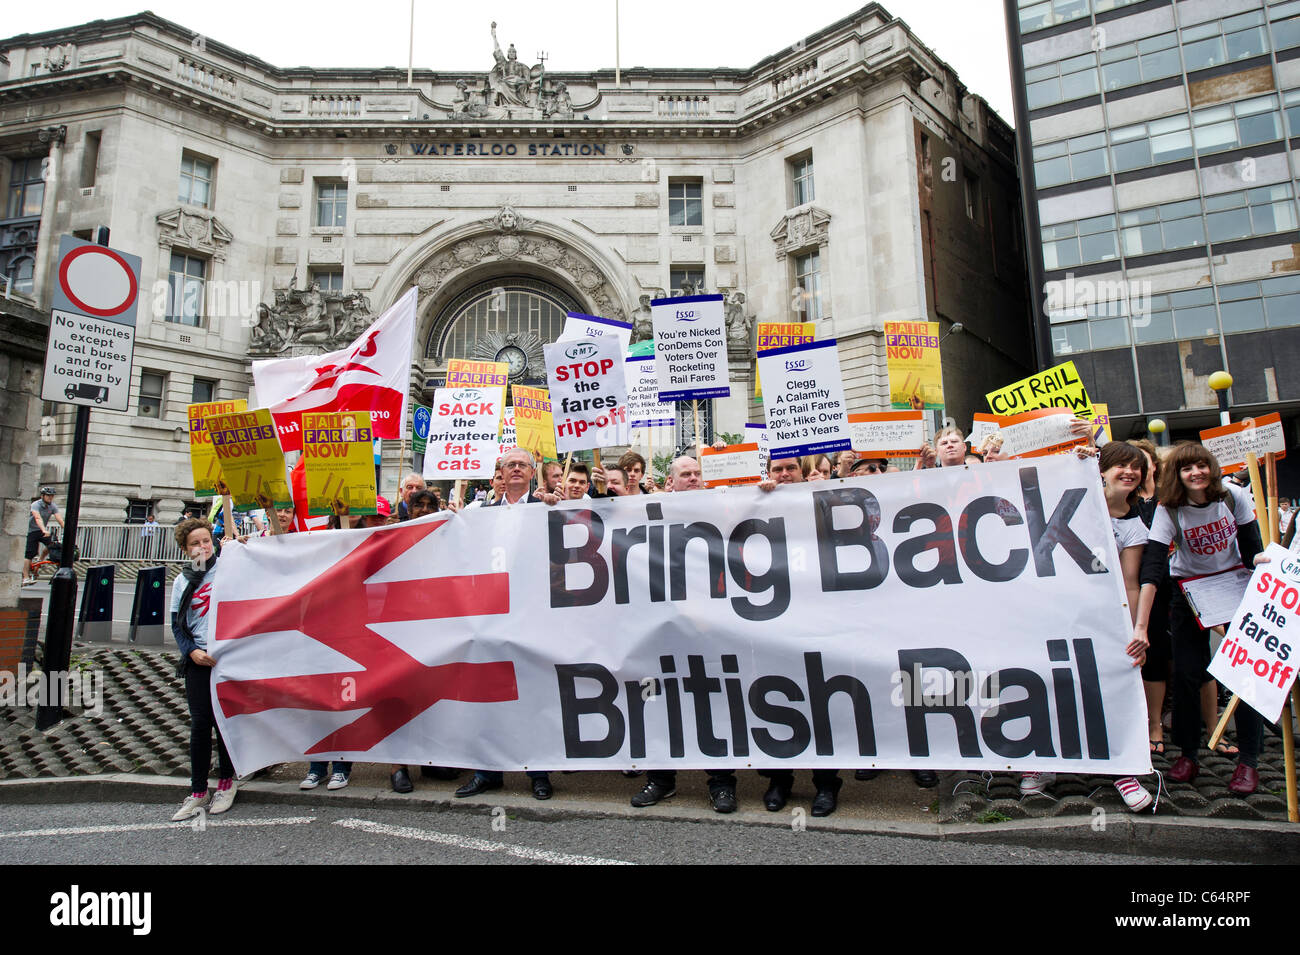 Protest gegen höhere Fahrpreise bei der Bahn und British Rail, gegenüber Bahnhof Waterloo zurückzubringen Stockfoto